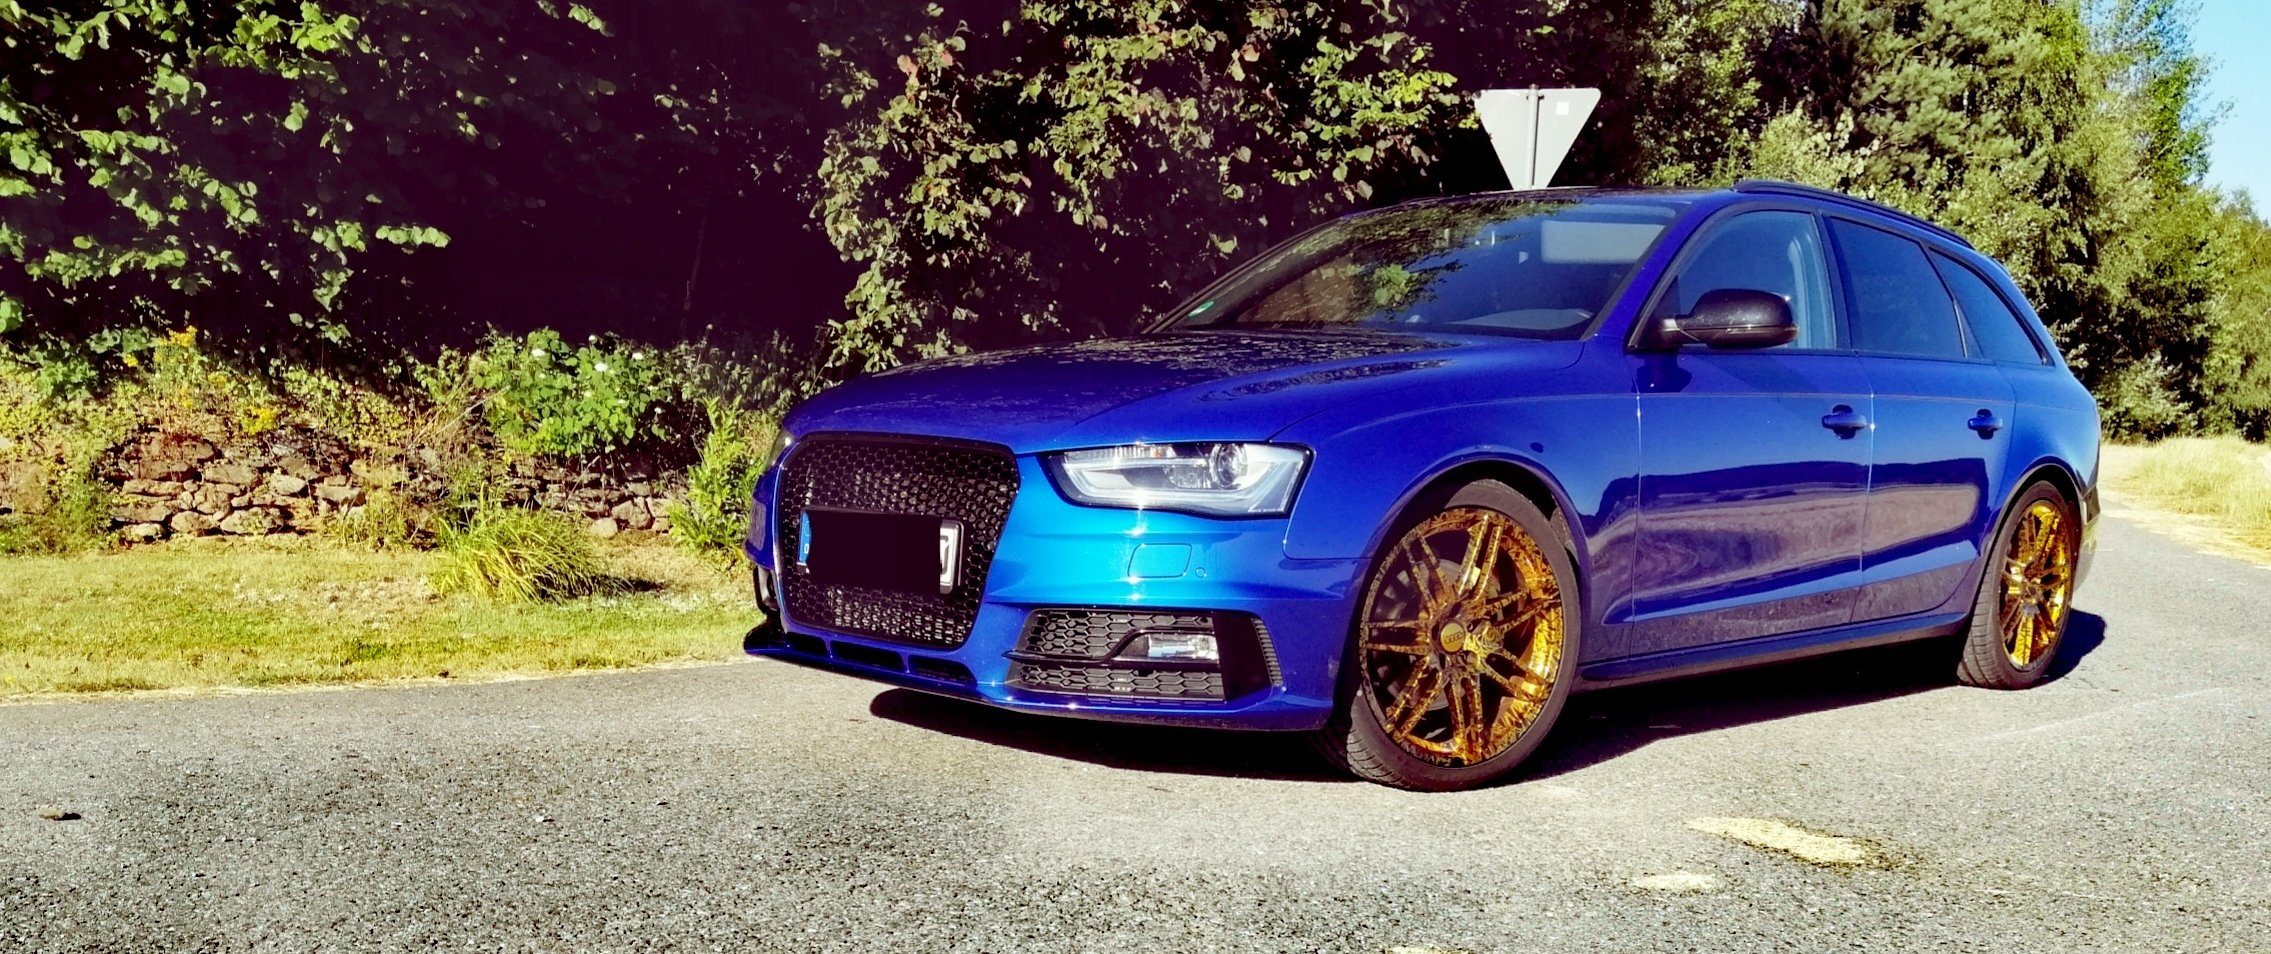 Audi – A4 – Blau – ORIGINAL AUDI – 7-Doppelspeichen-Design – Gold – 19 Zoll